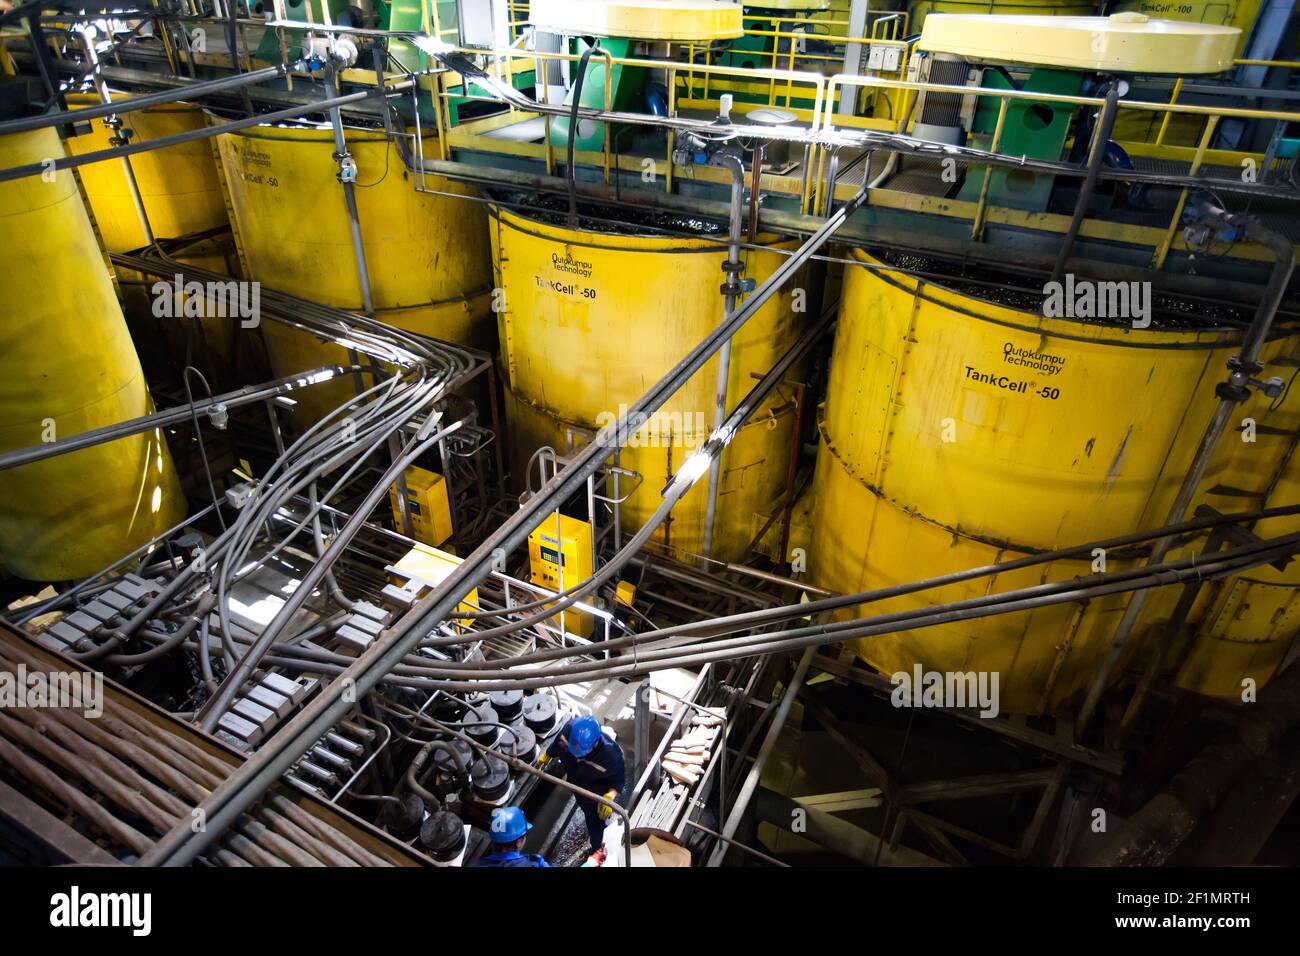 Khromtau/Kazakhstan - mai 06 2012 : usine de concentration de minerai de cuivre. Équipement technologique Outokumpu. Réservoirs jaunes pour flottation et traitement et deux m Banque D'Images